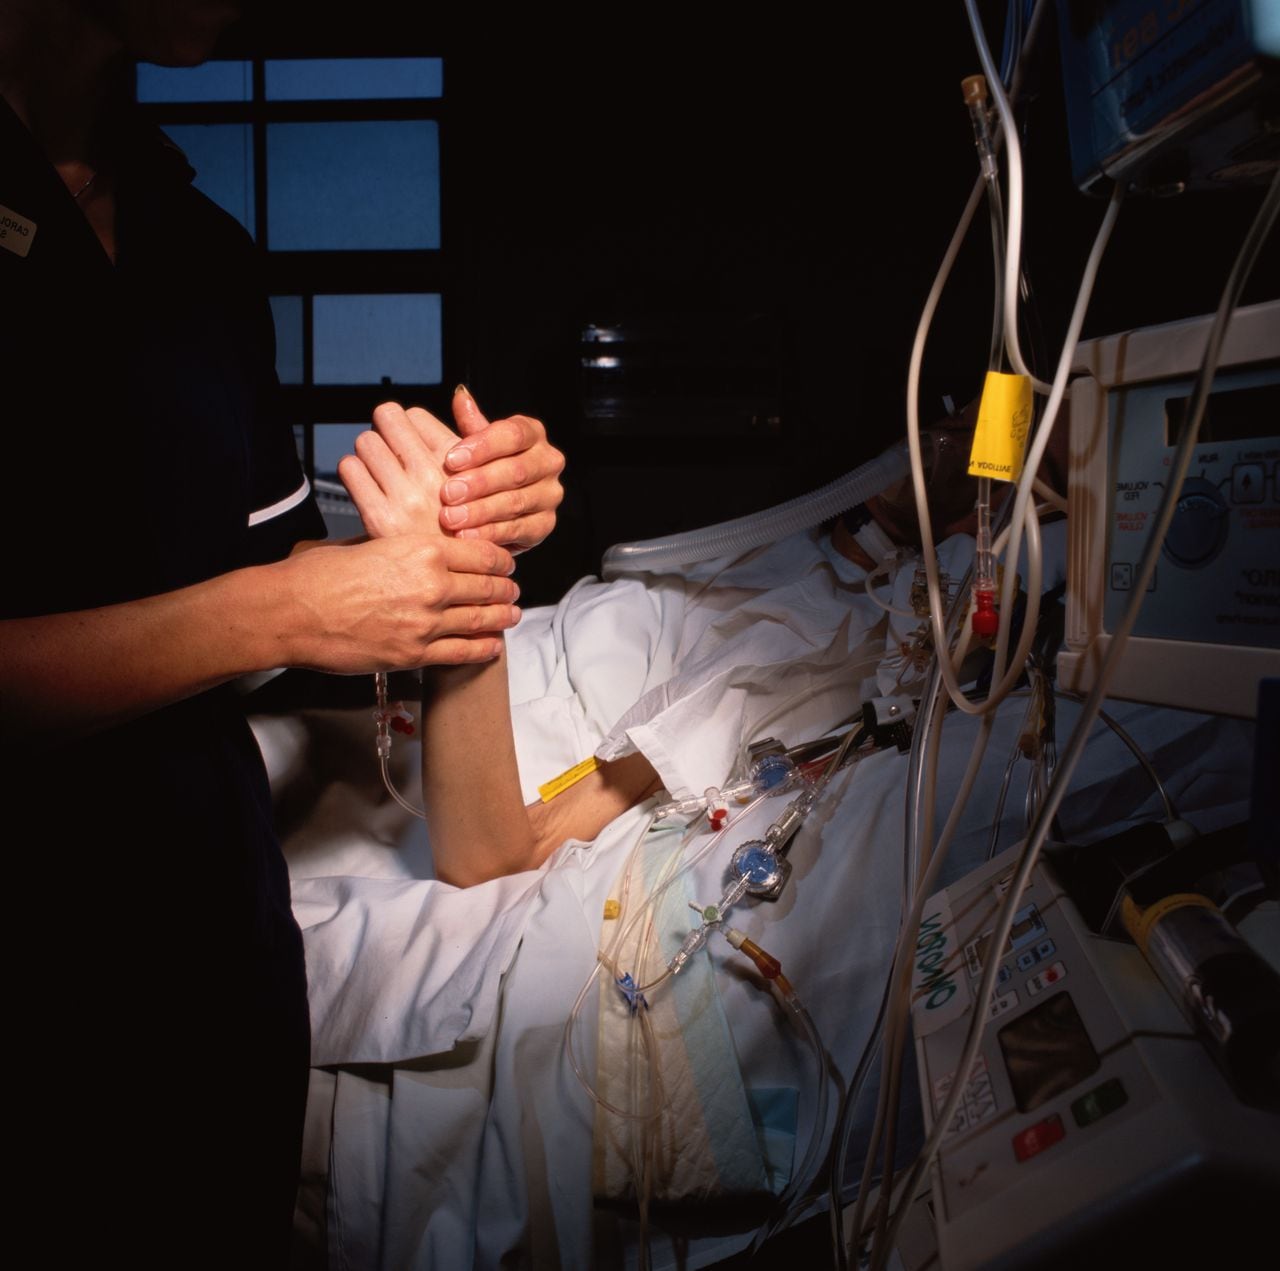 Un paciente murió cuando le realizaban un electrocardiograma, lo que permitió saber qué pasó por su cerebro al momento de su deceso.